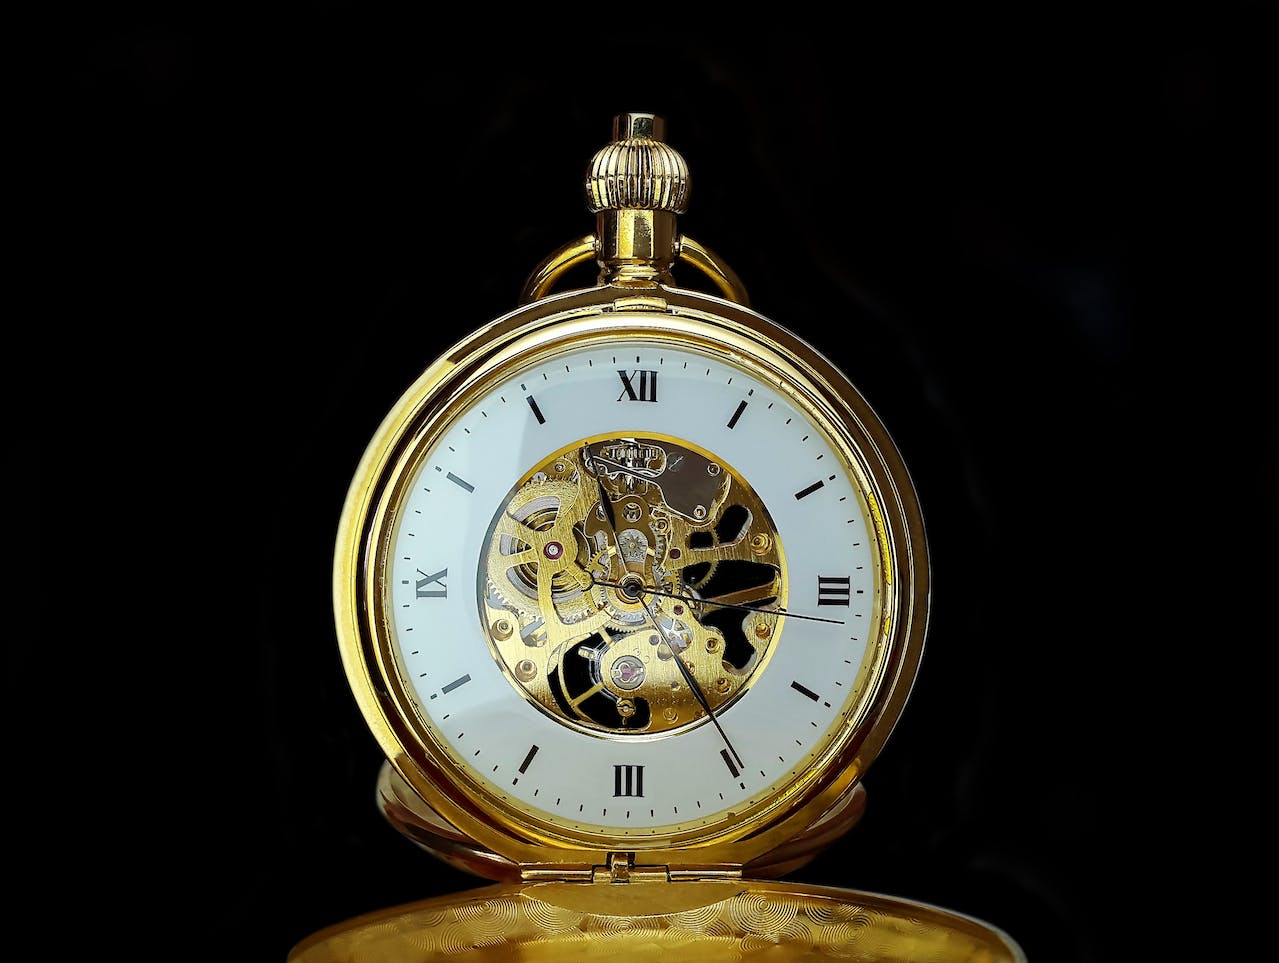 Gouden horloges verkopen? Let op de risico's